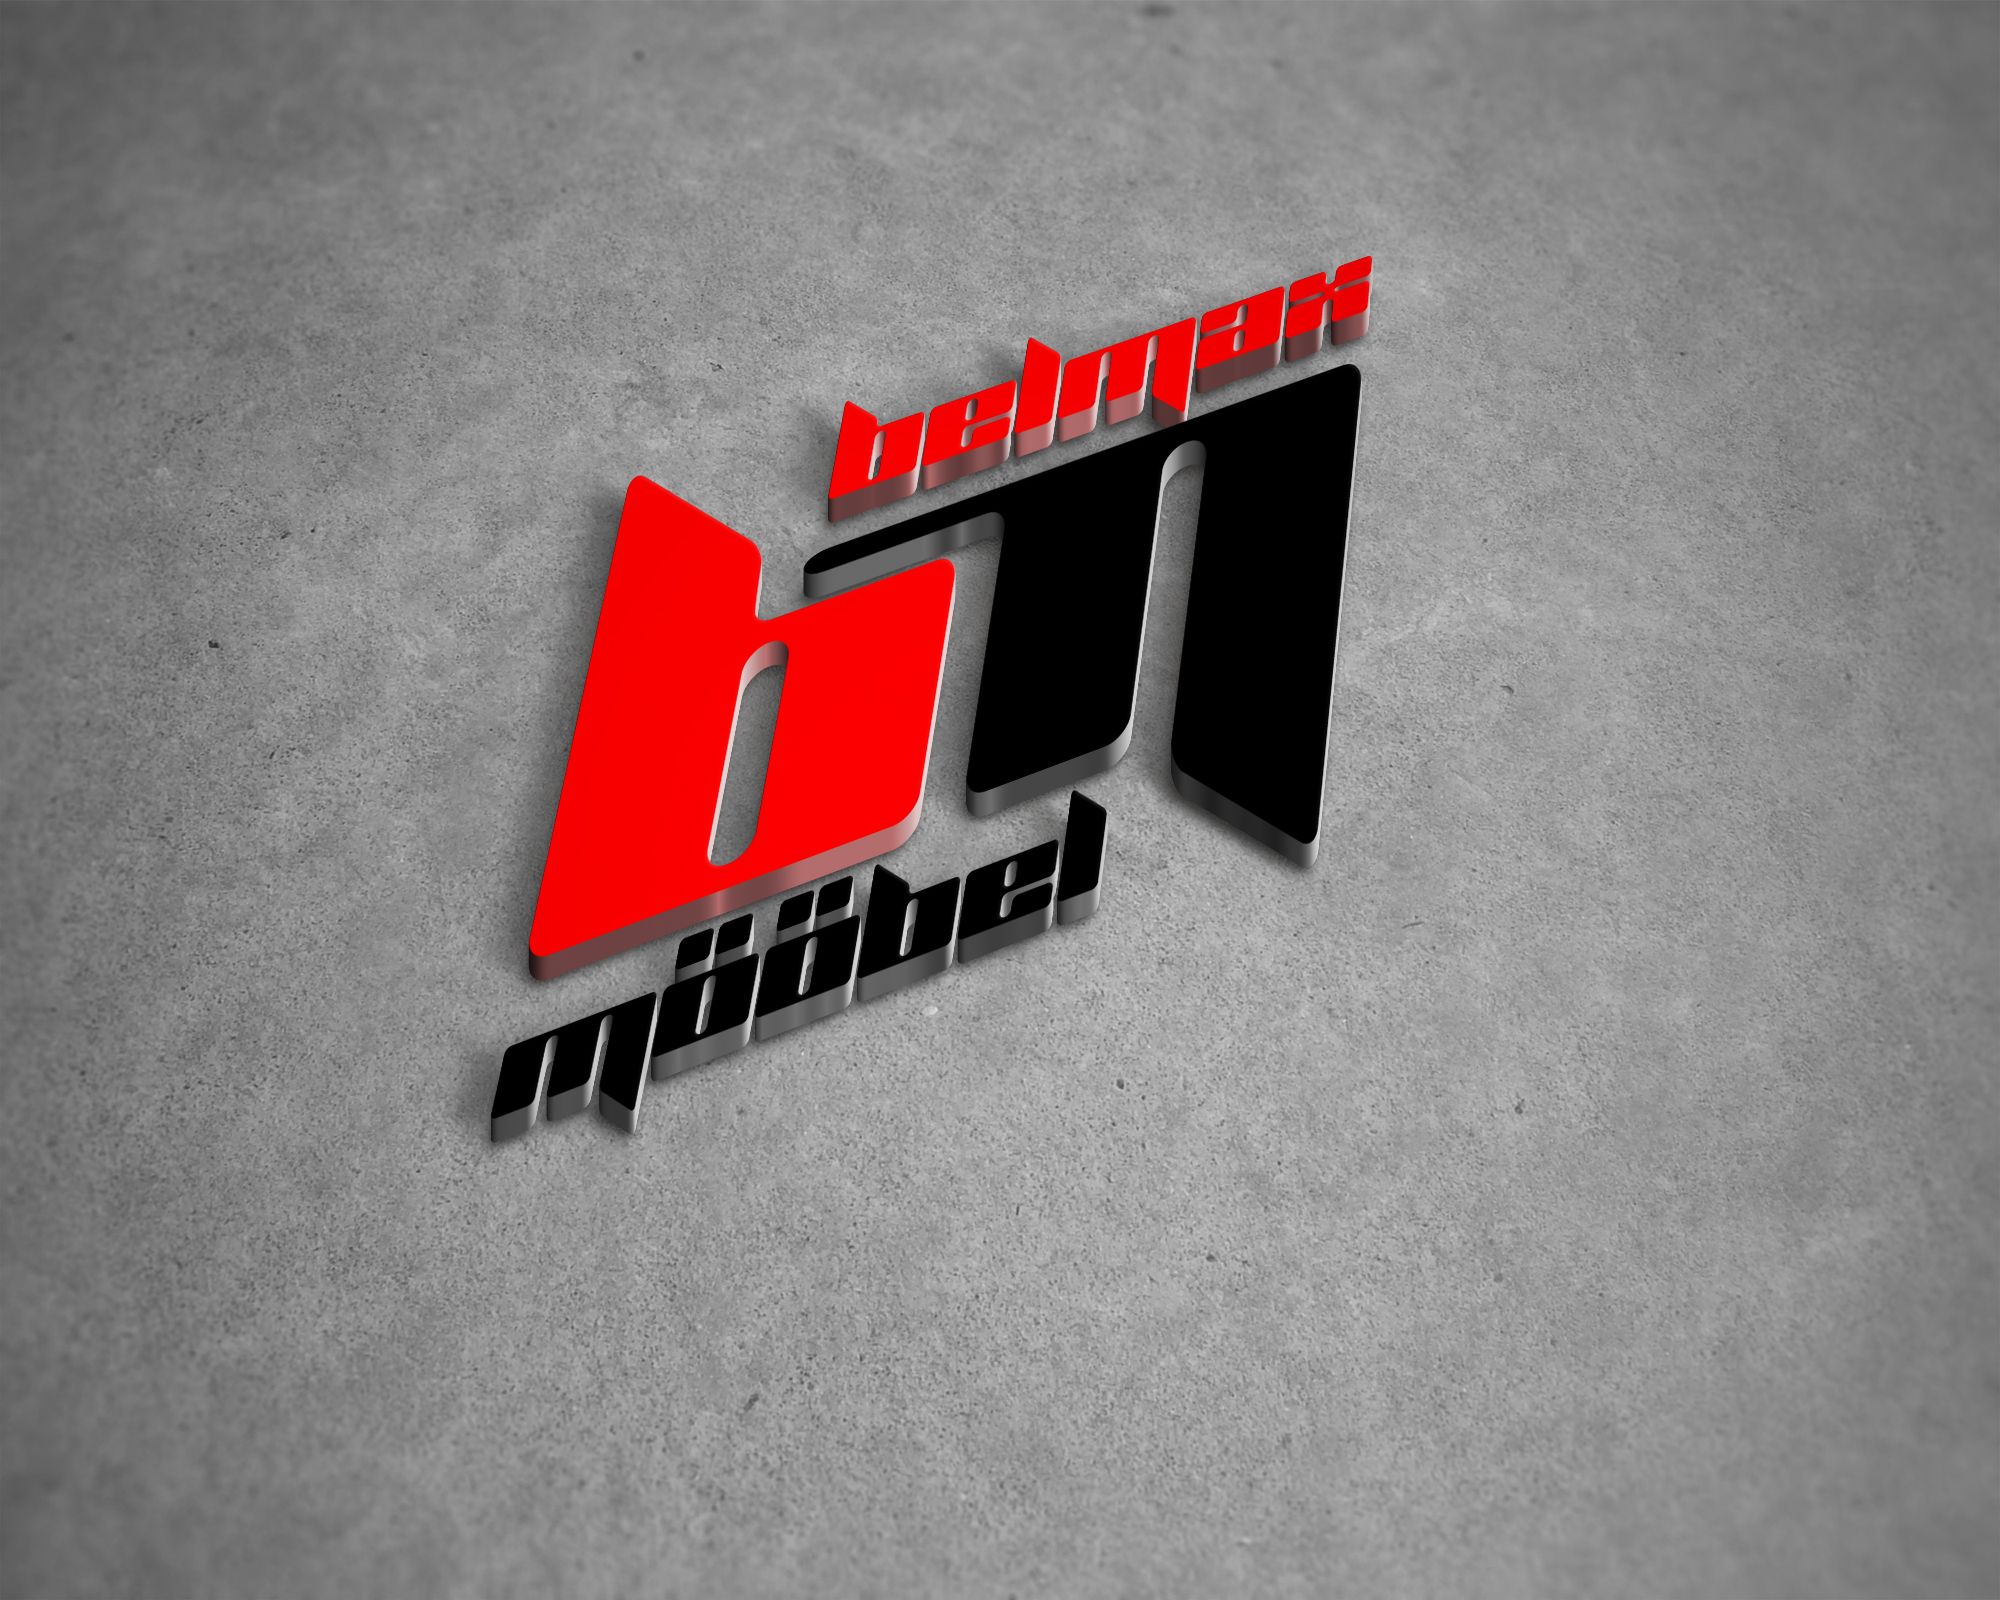 Логотип для BelMax mööbel - дизайнер Elshan